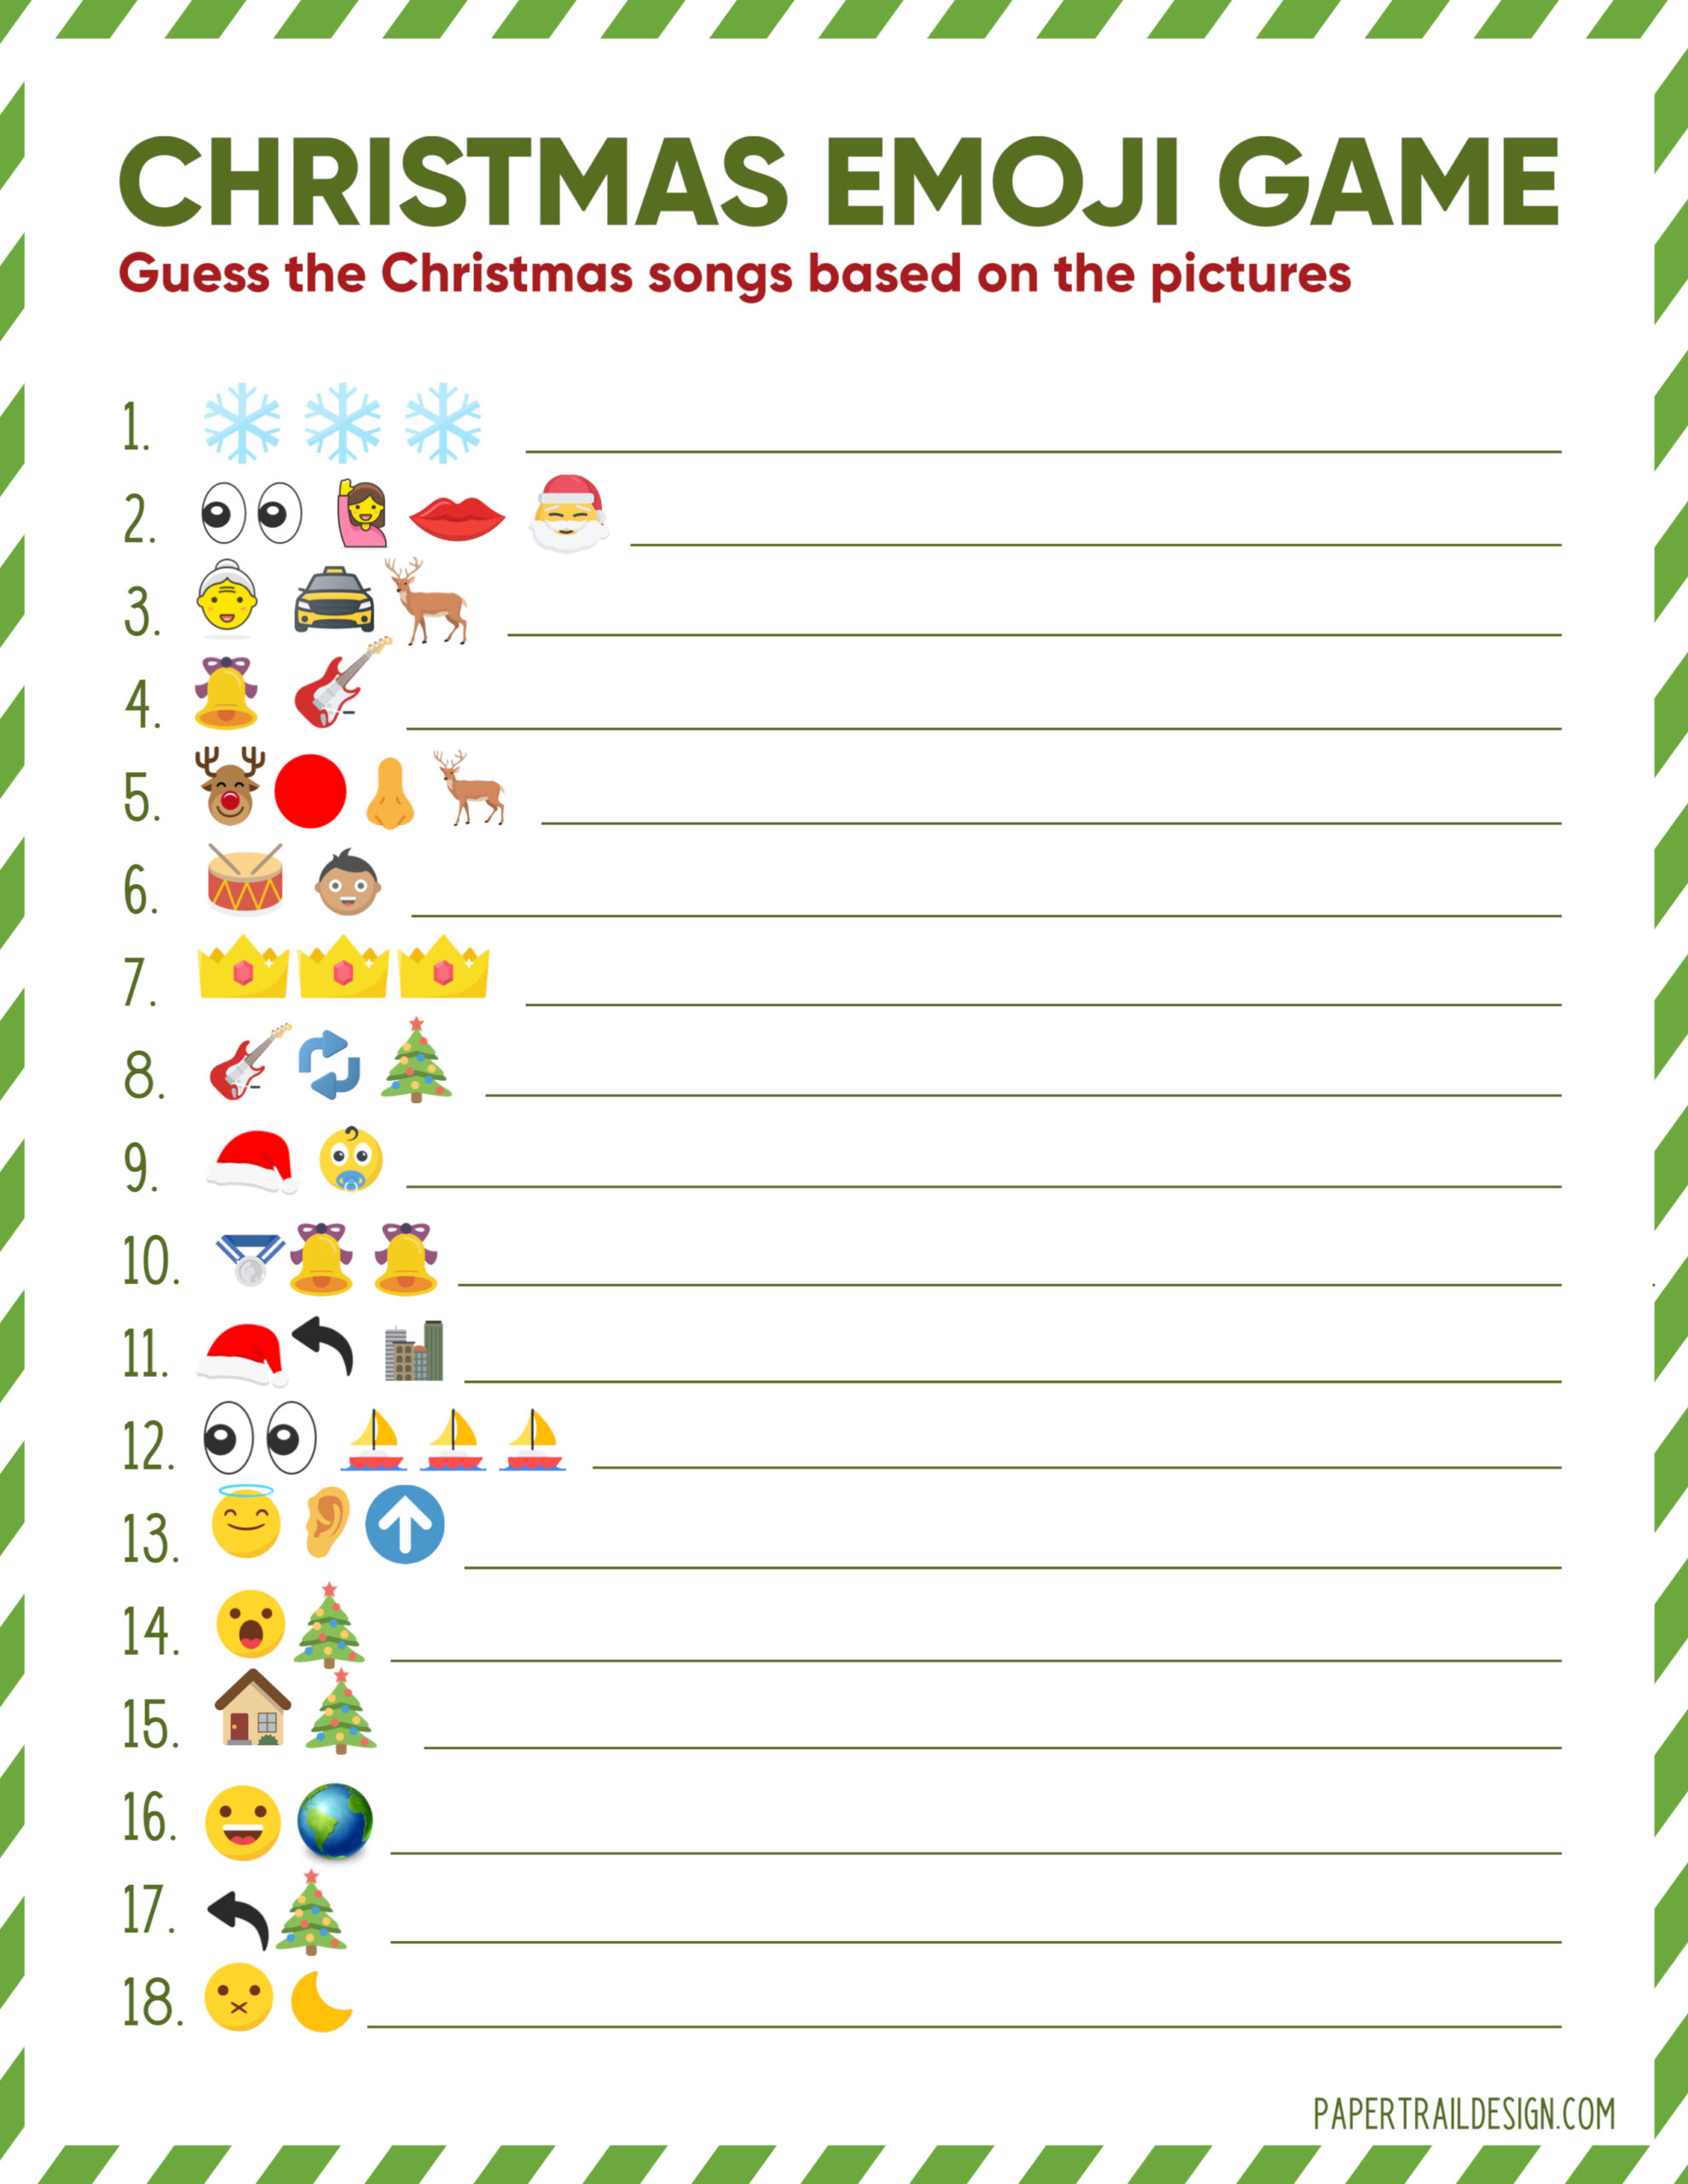 christmas-emoji-game-free-printable-printable-world-holiday